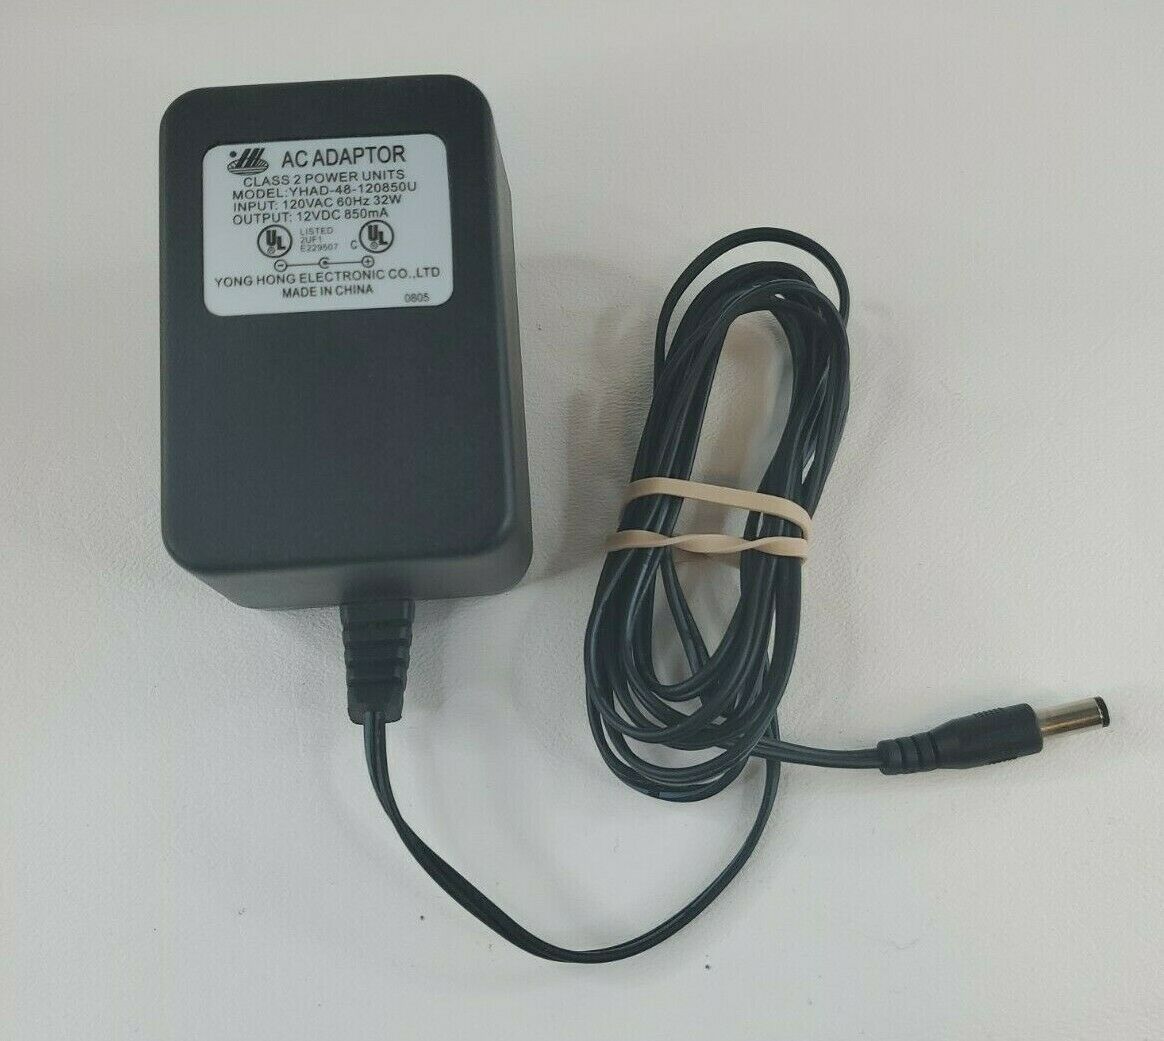 12V 850mA Yong Hong Electronic AC Power Adaptor - Yong Hong YHAD-48-120850U Country/Region of Manufacture: China Conne